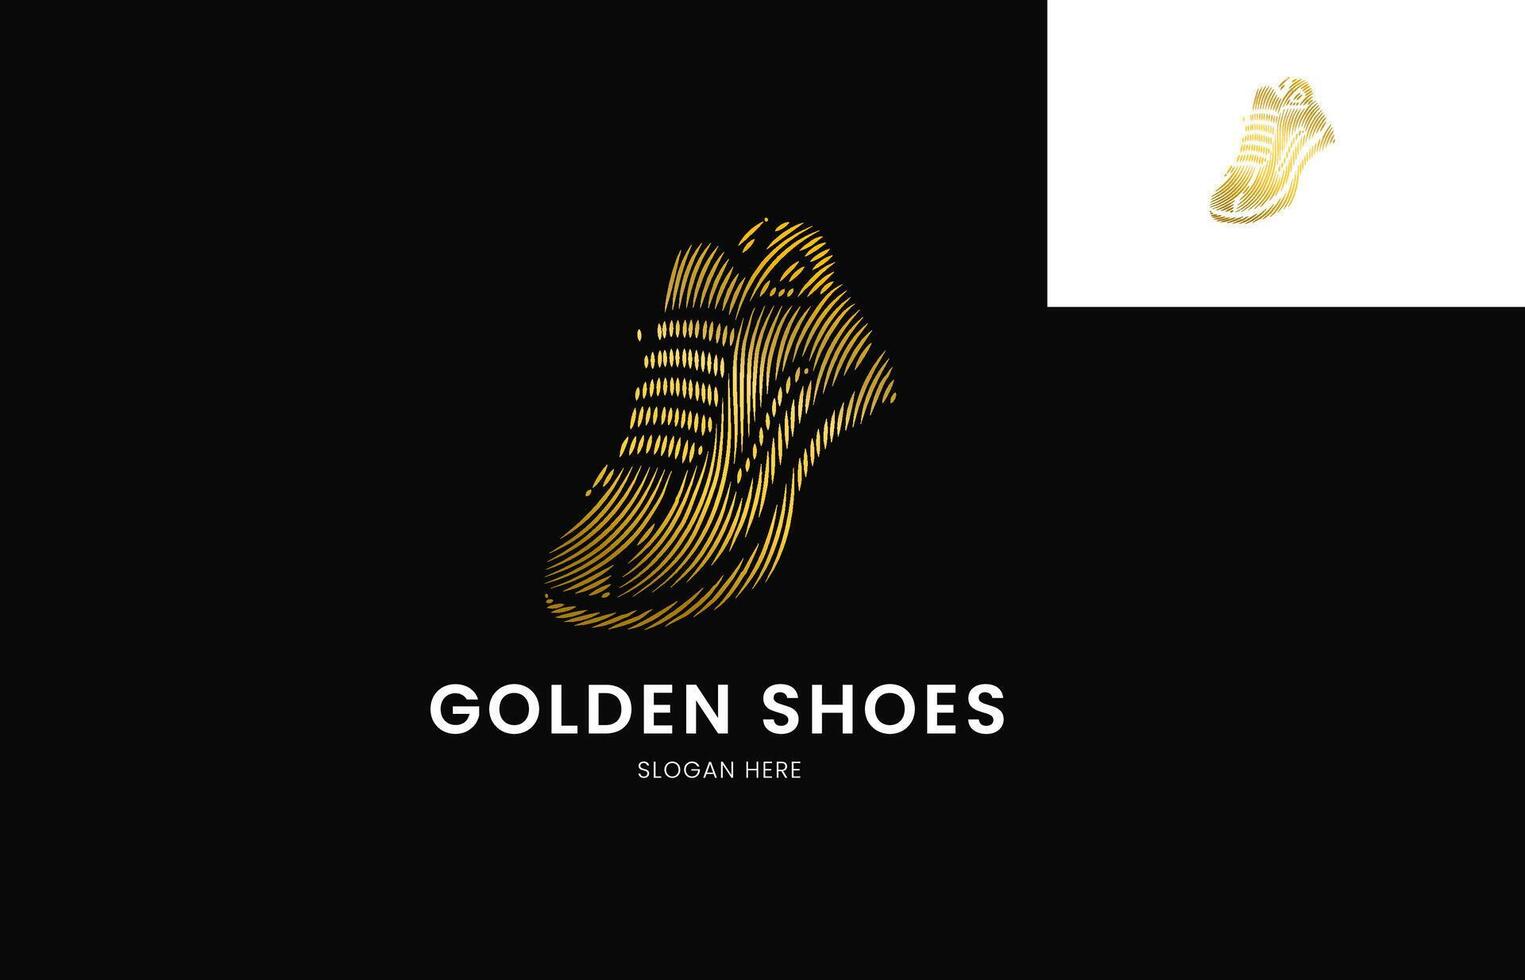 ein graviert golden Schuhe Logo Design, Logo zum Schuhe Unternehmen, begrenzt Produkt, usw. vektor